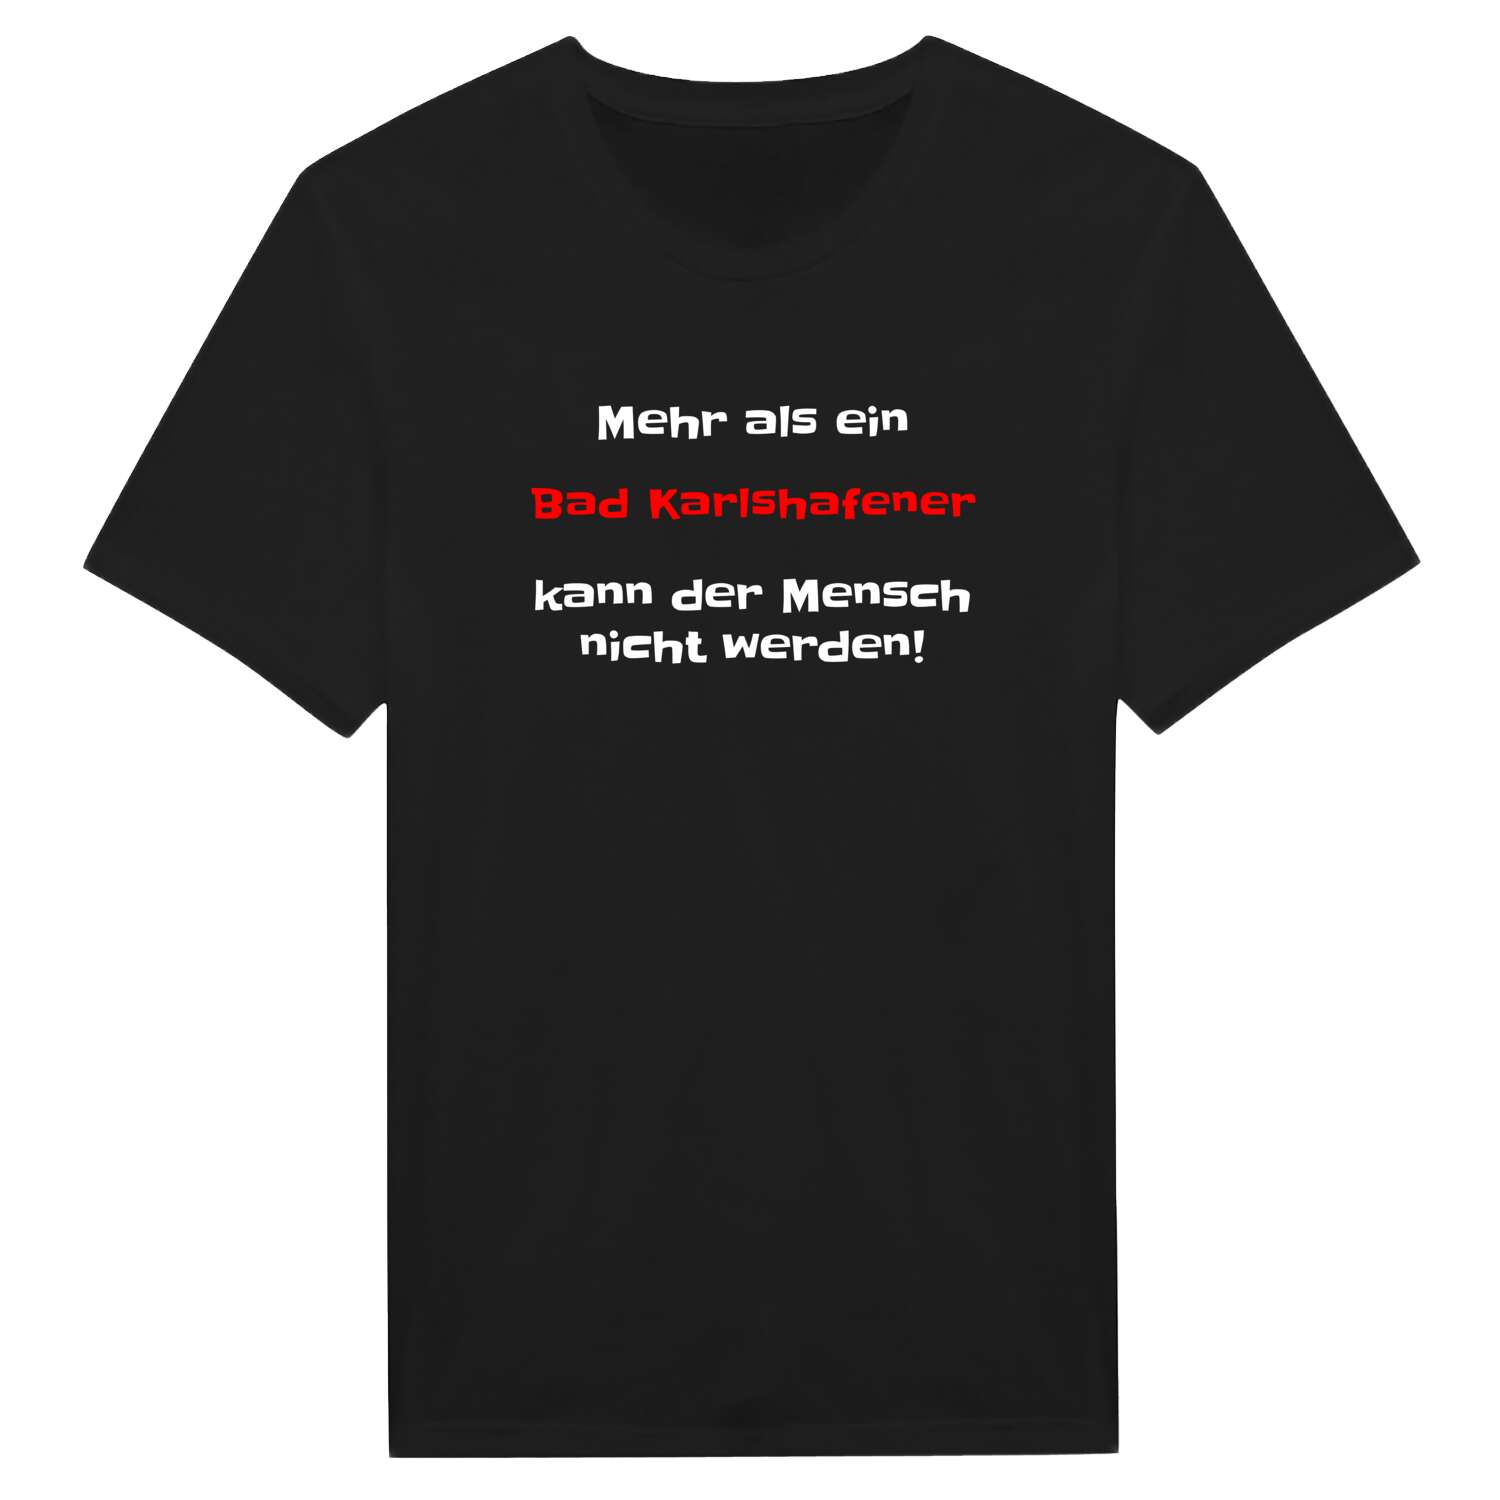 Bad Karlshafen T-Shirt »Mehr als ein«